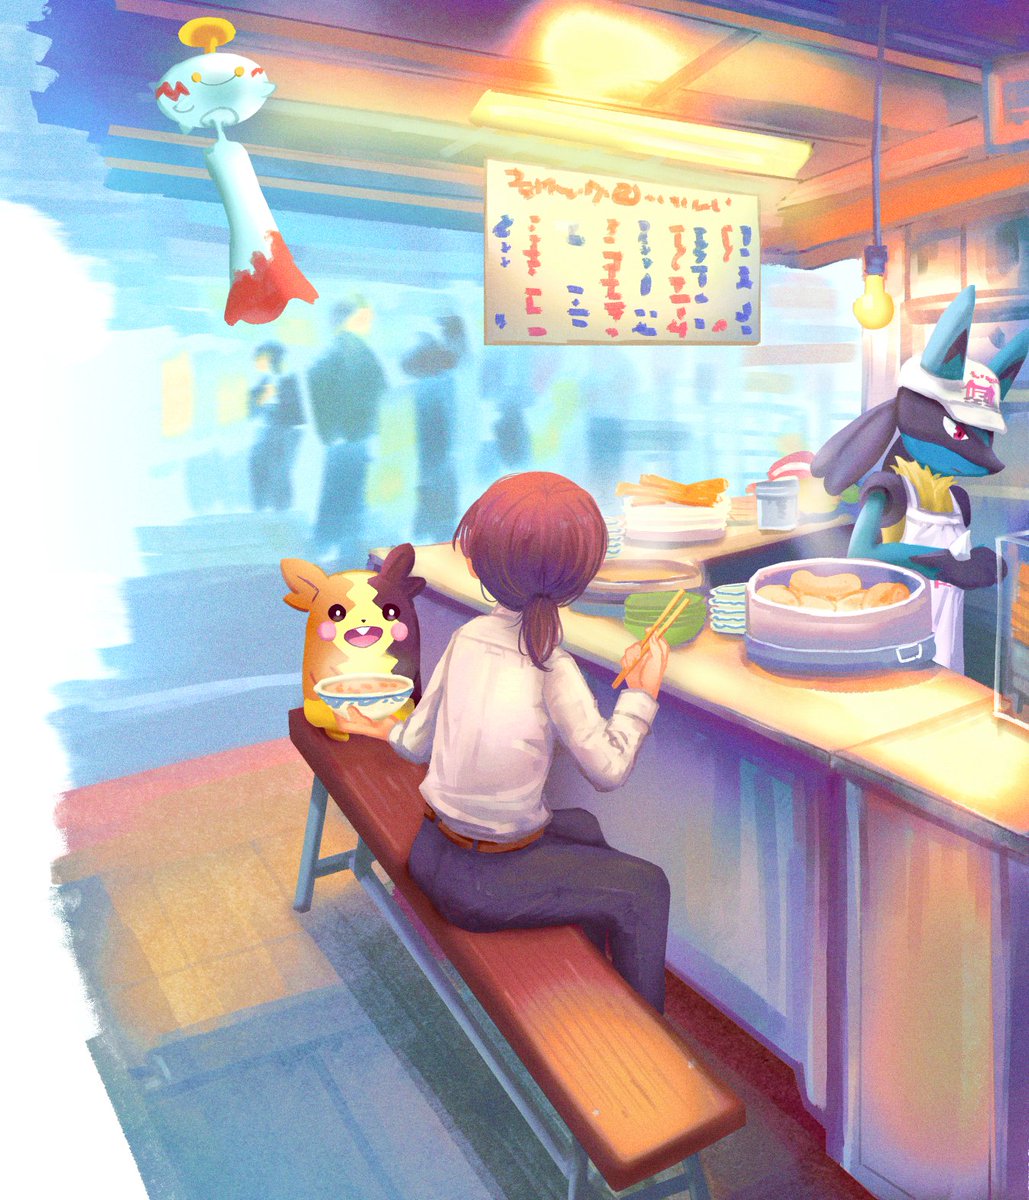 ポケモンと夜市

#Pokemonfanart #イラスト #illustration